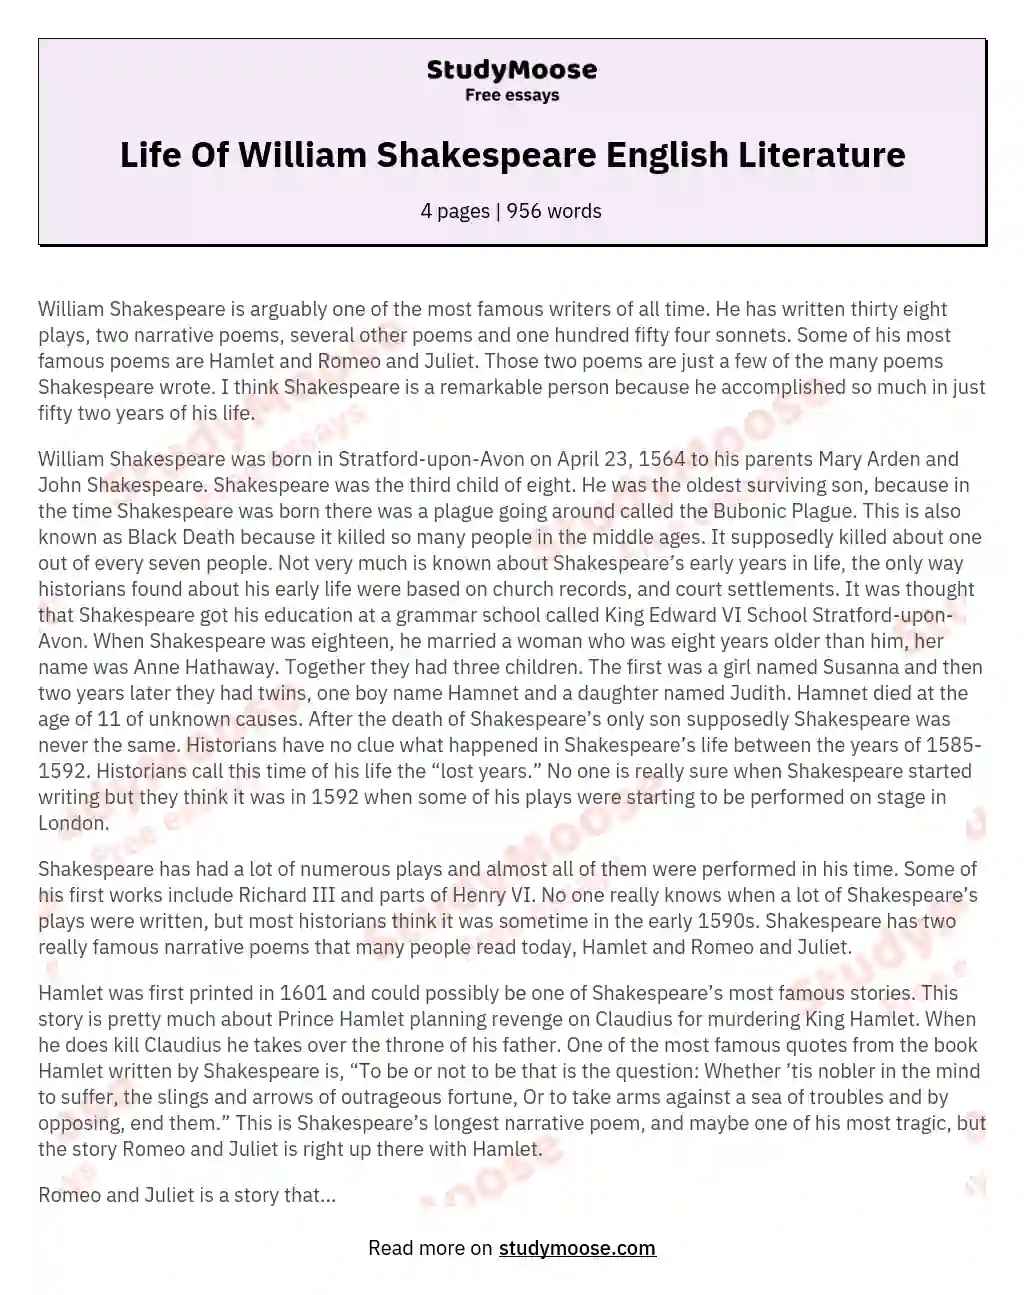 Life Of William Shakespeare English Literature essay